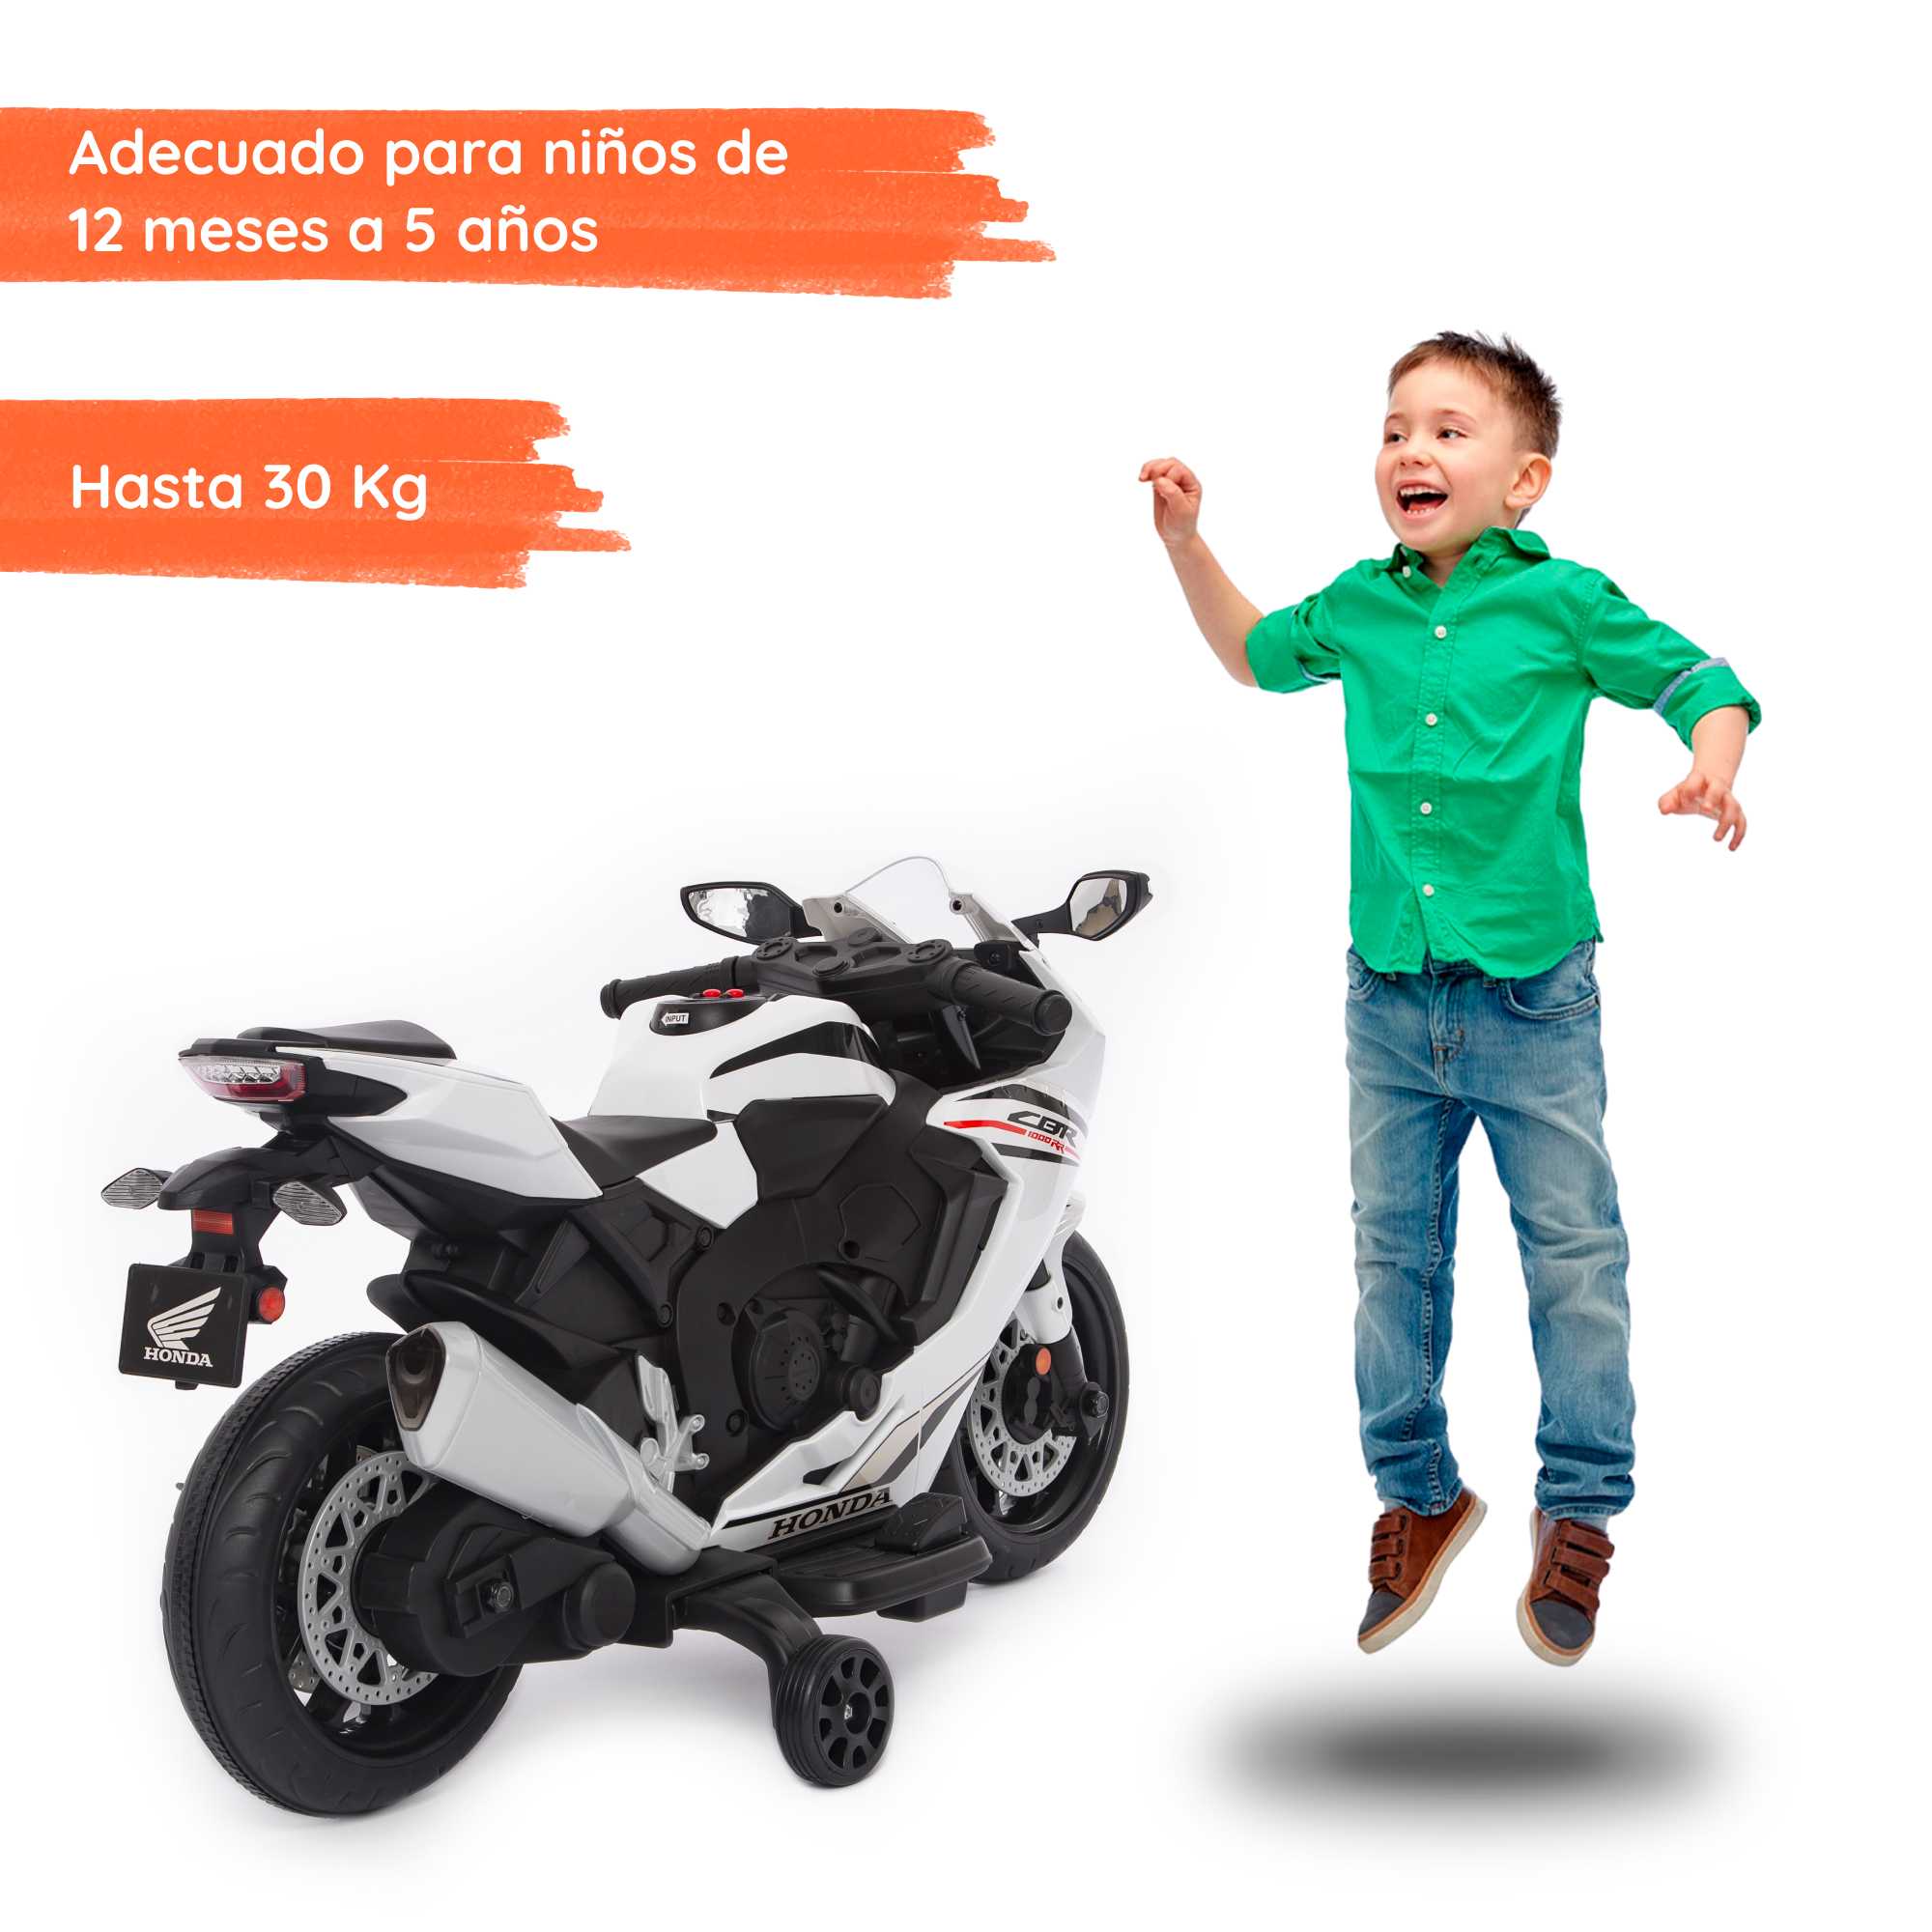 Honda CBR blanca con niño